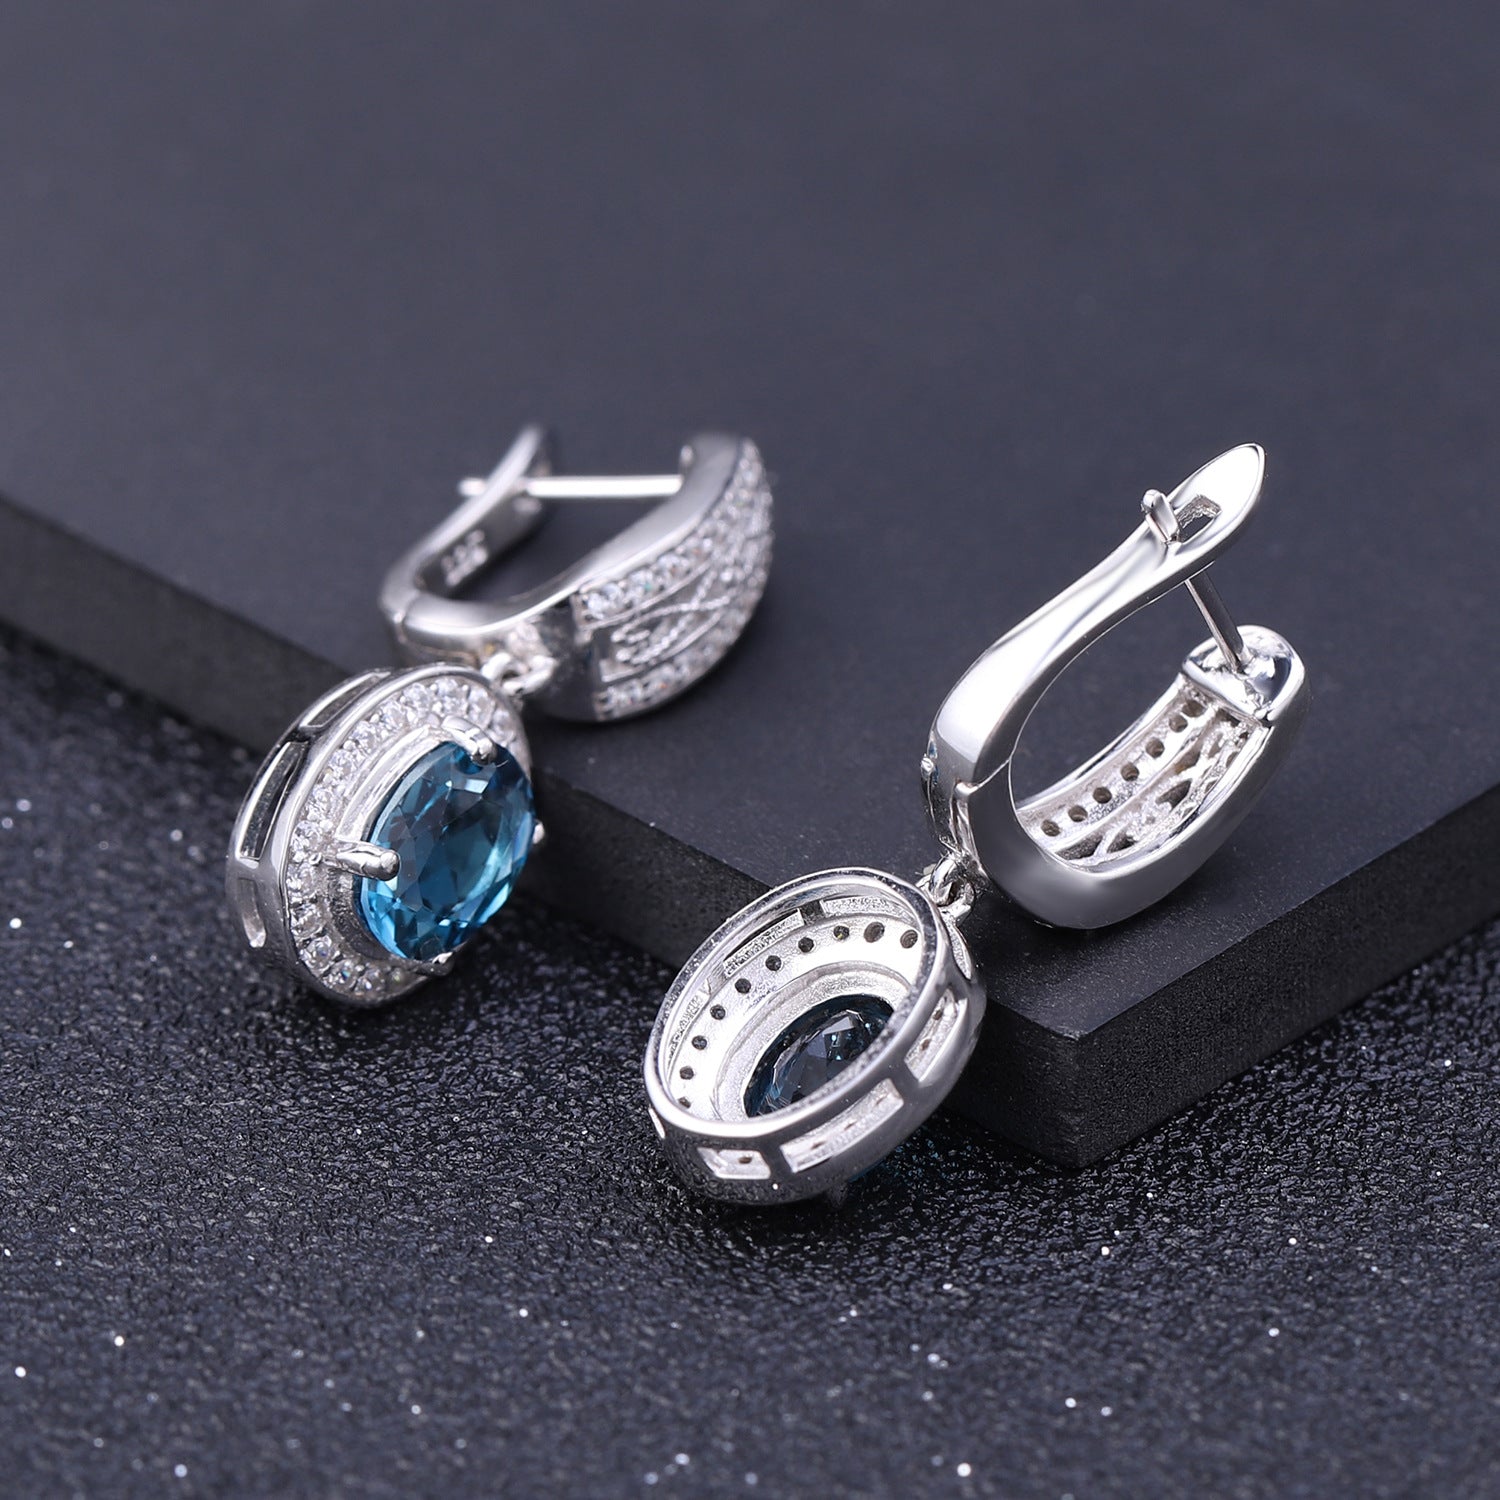 London Blue Topaz Earrings Womens - HERS